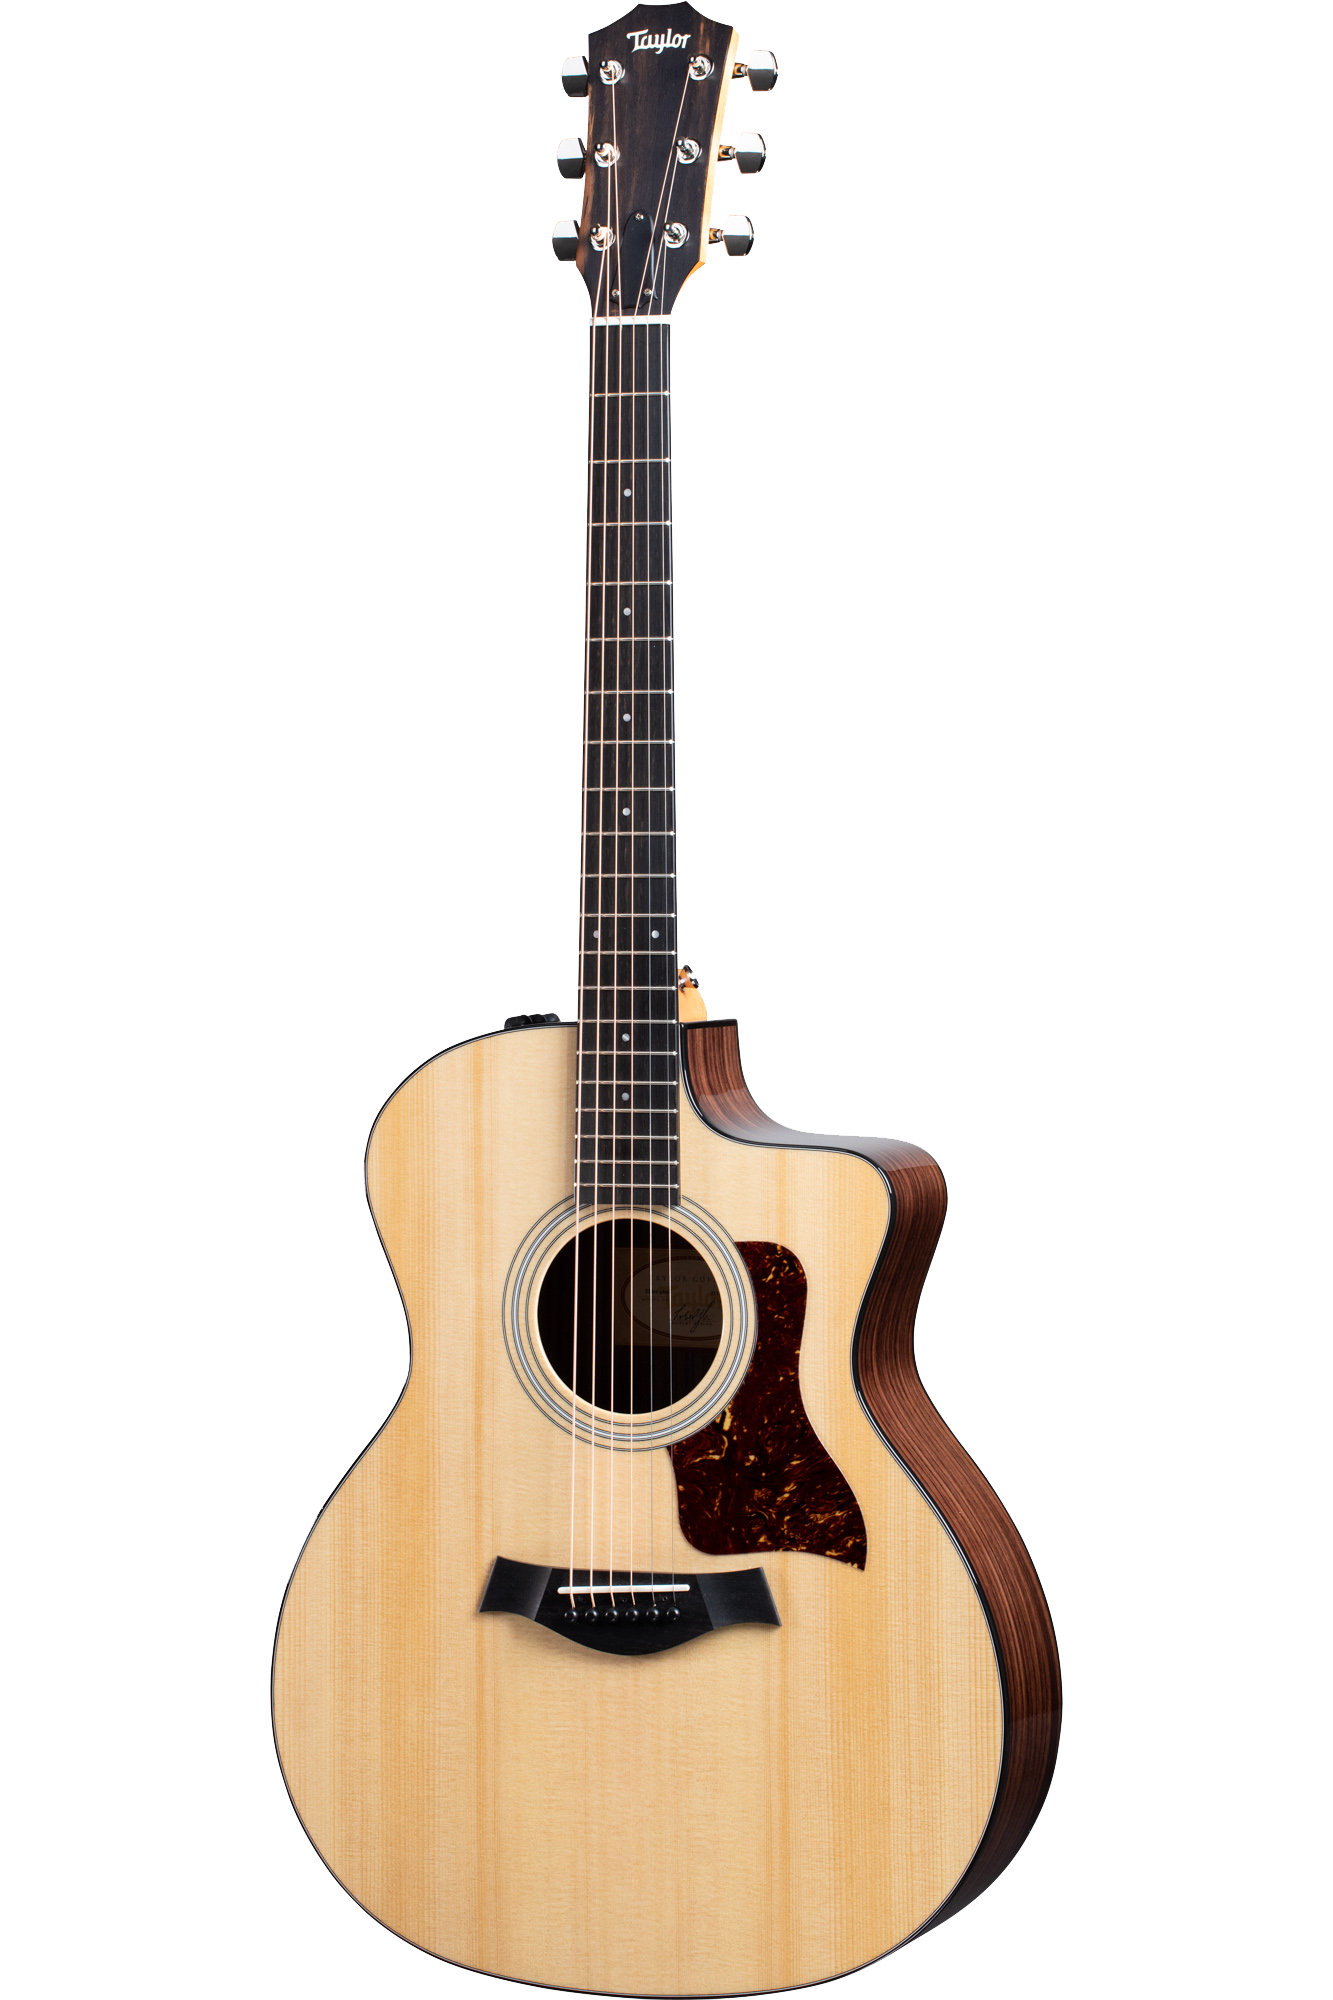 Taylor 214ce Plus Acoustic guitar in Natural color Tone Shop Guitars DFW